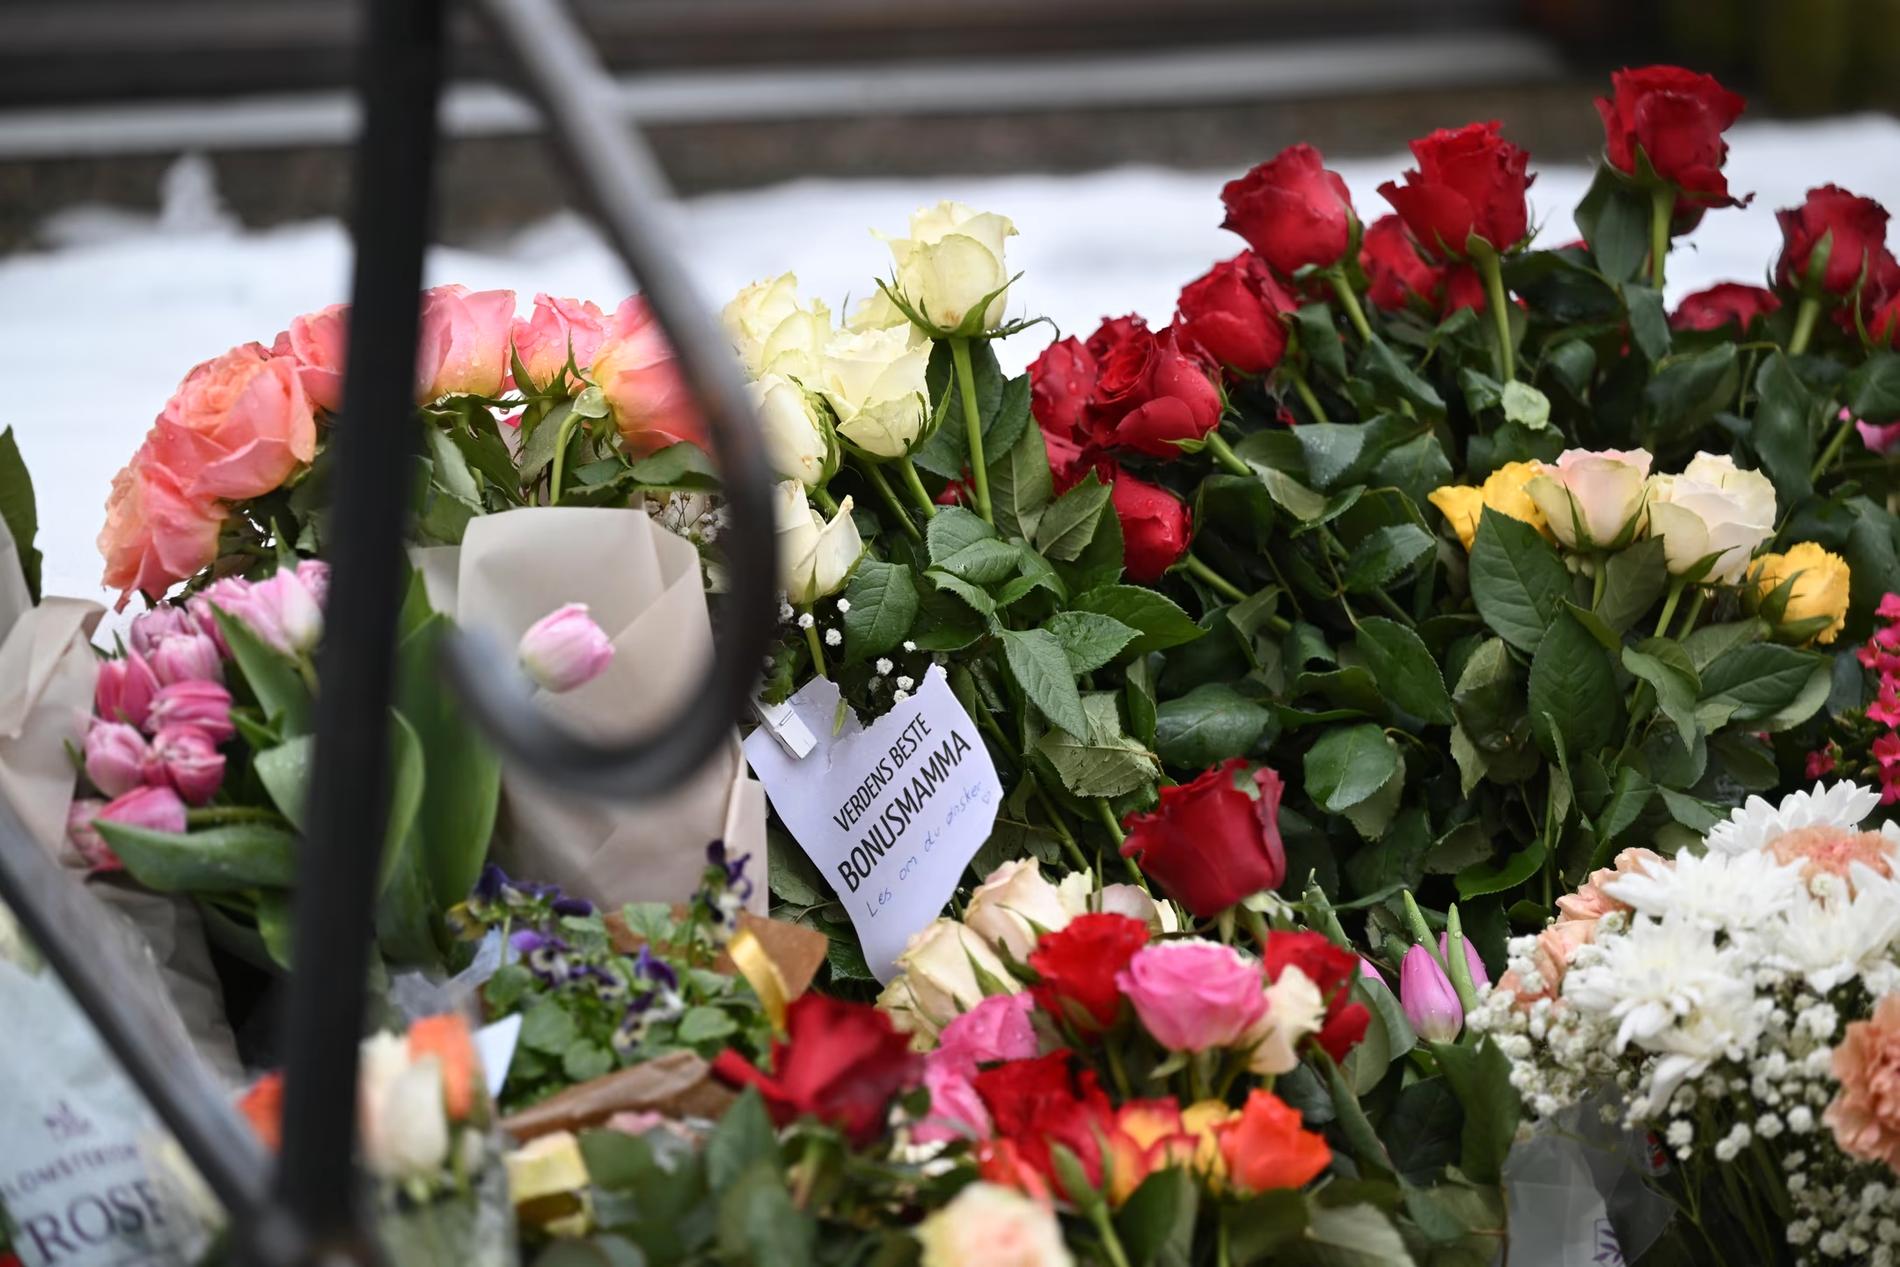 Dagarna efter mordet samlades flera personer utanför apoteket för att lämna rosor och tända ljus.